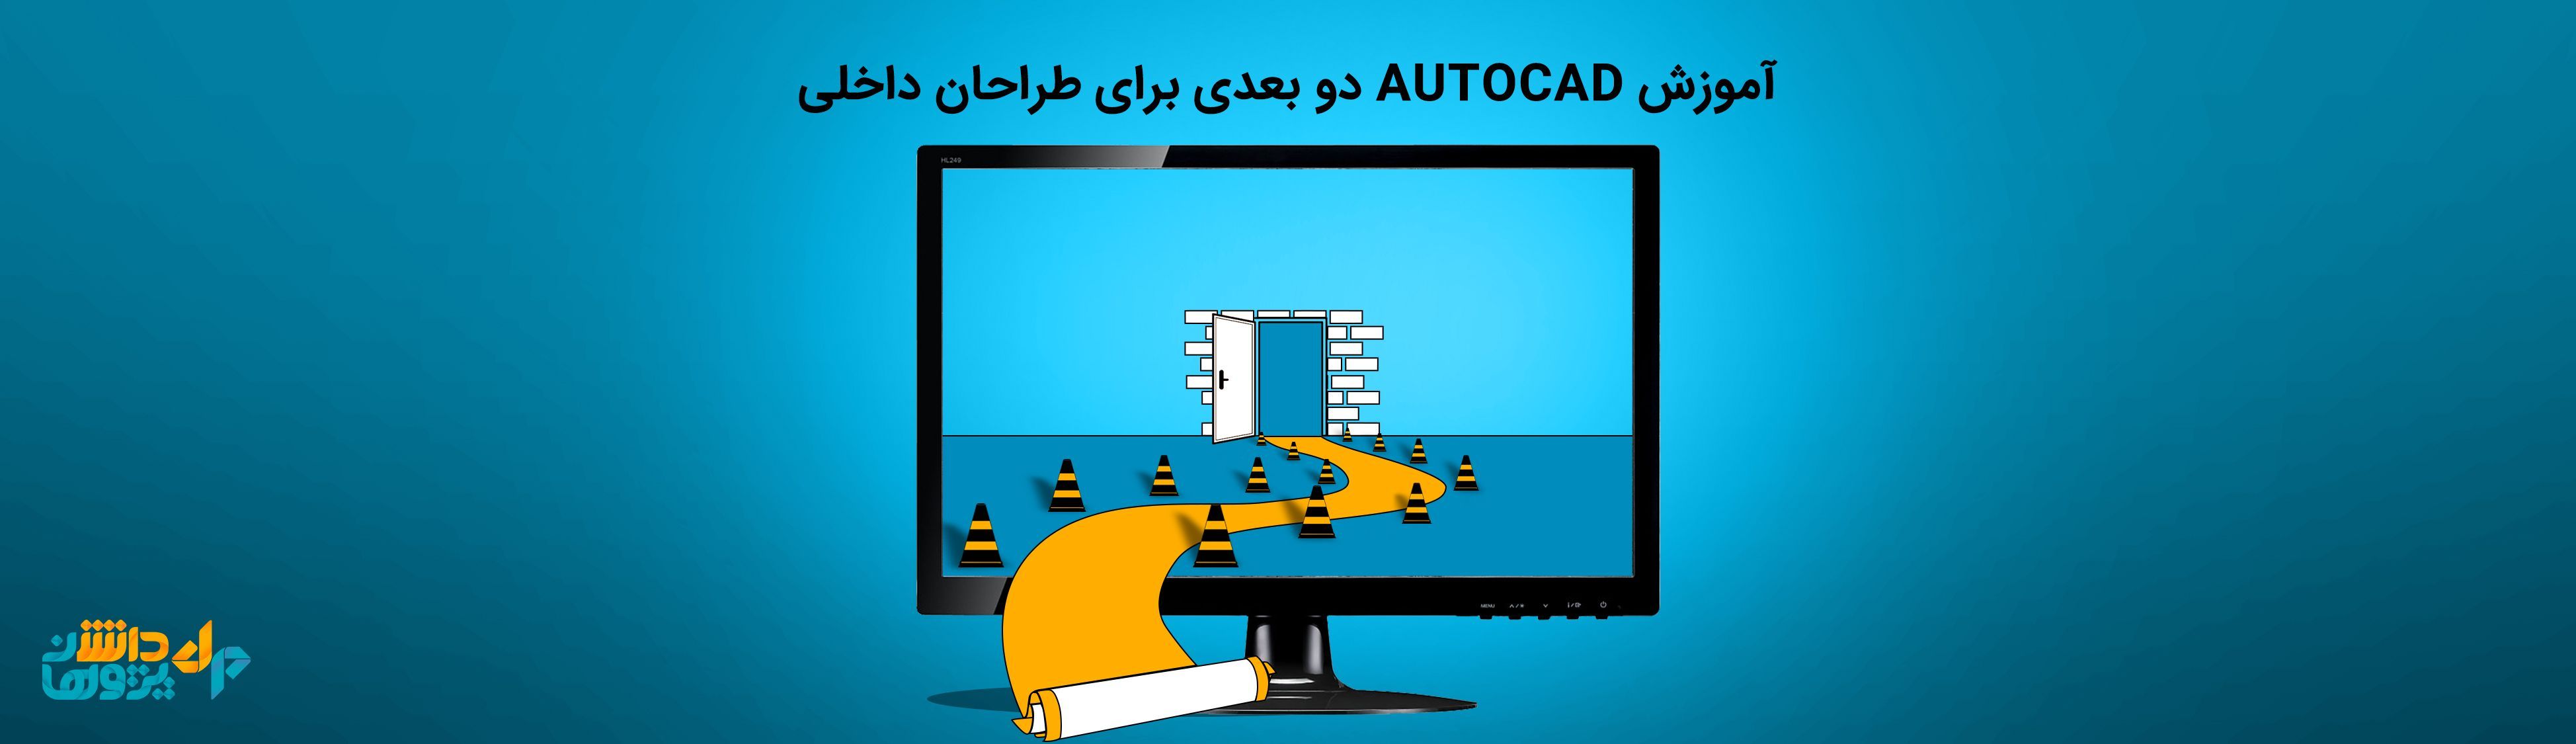 آموزش اتوکد دو بعدی AutoCAD